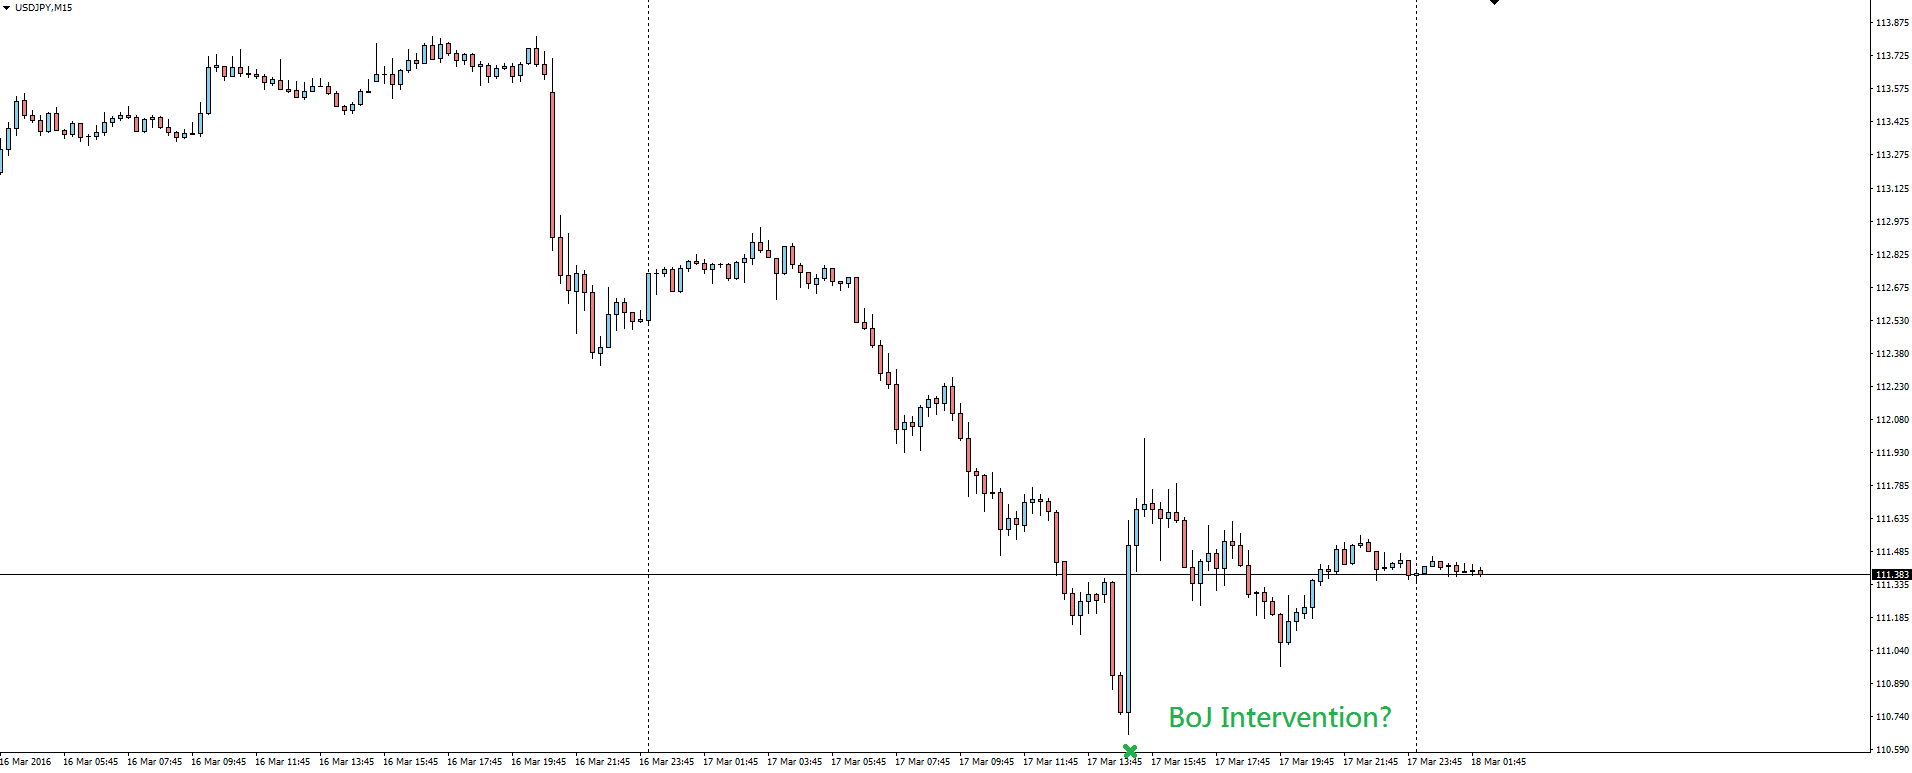 USD/JPY 15 Minute Chart